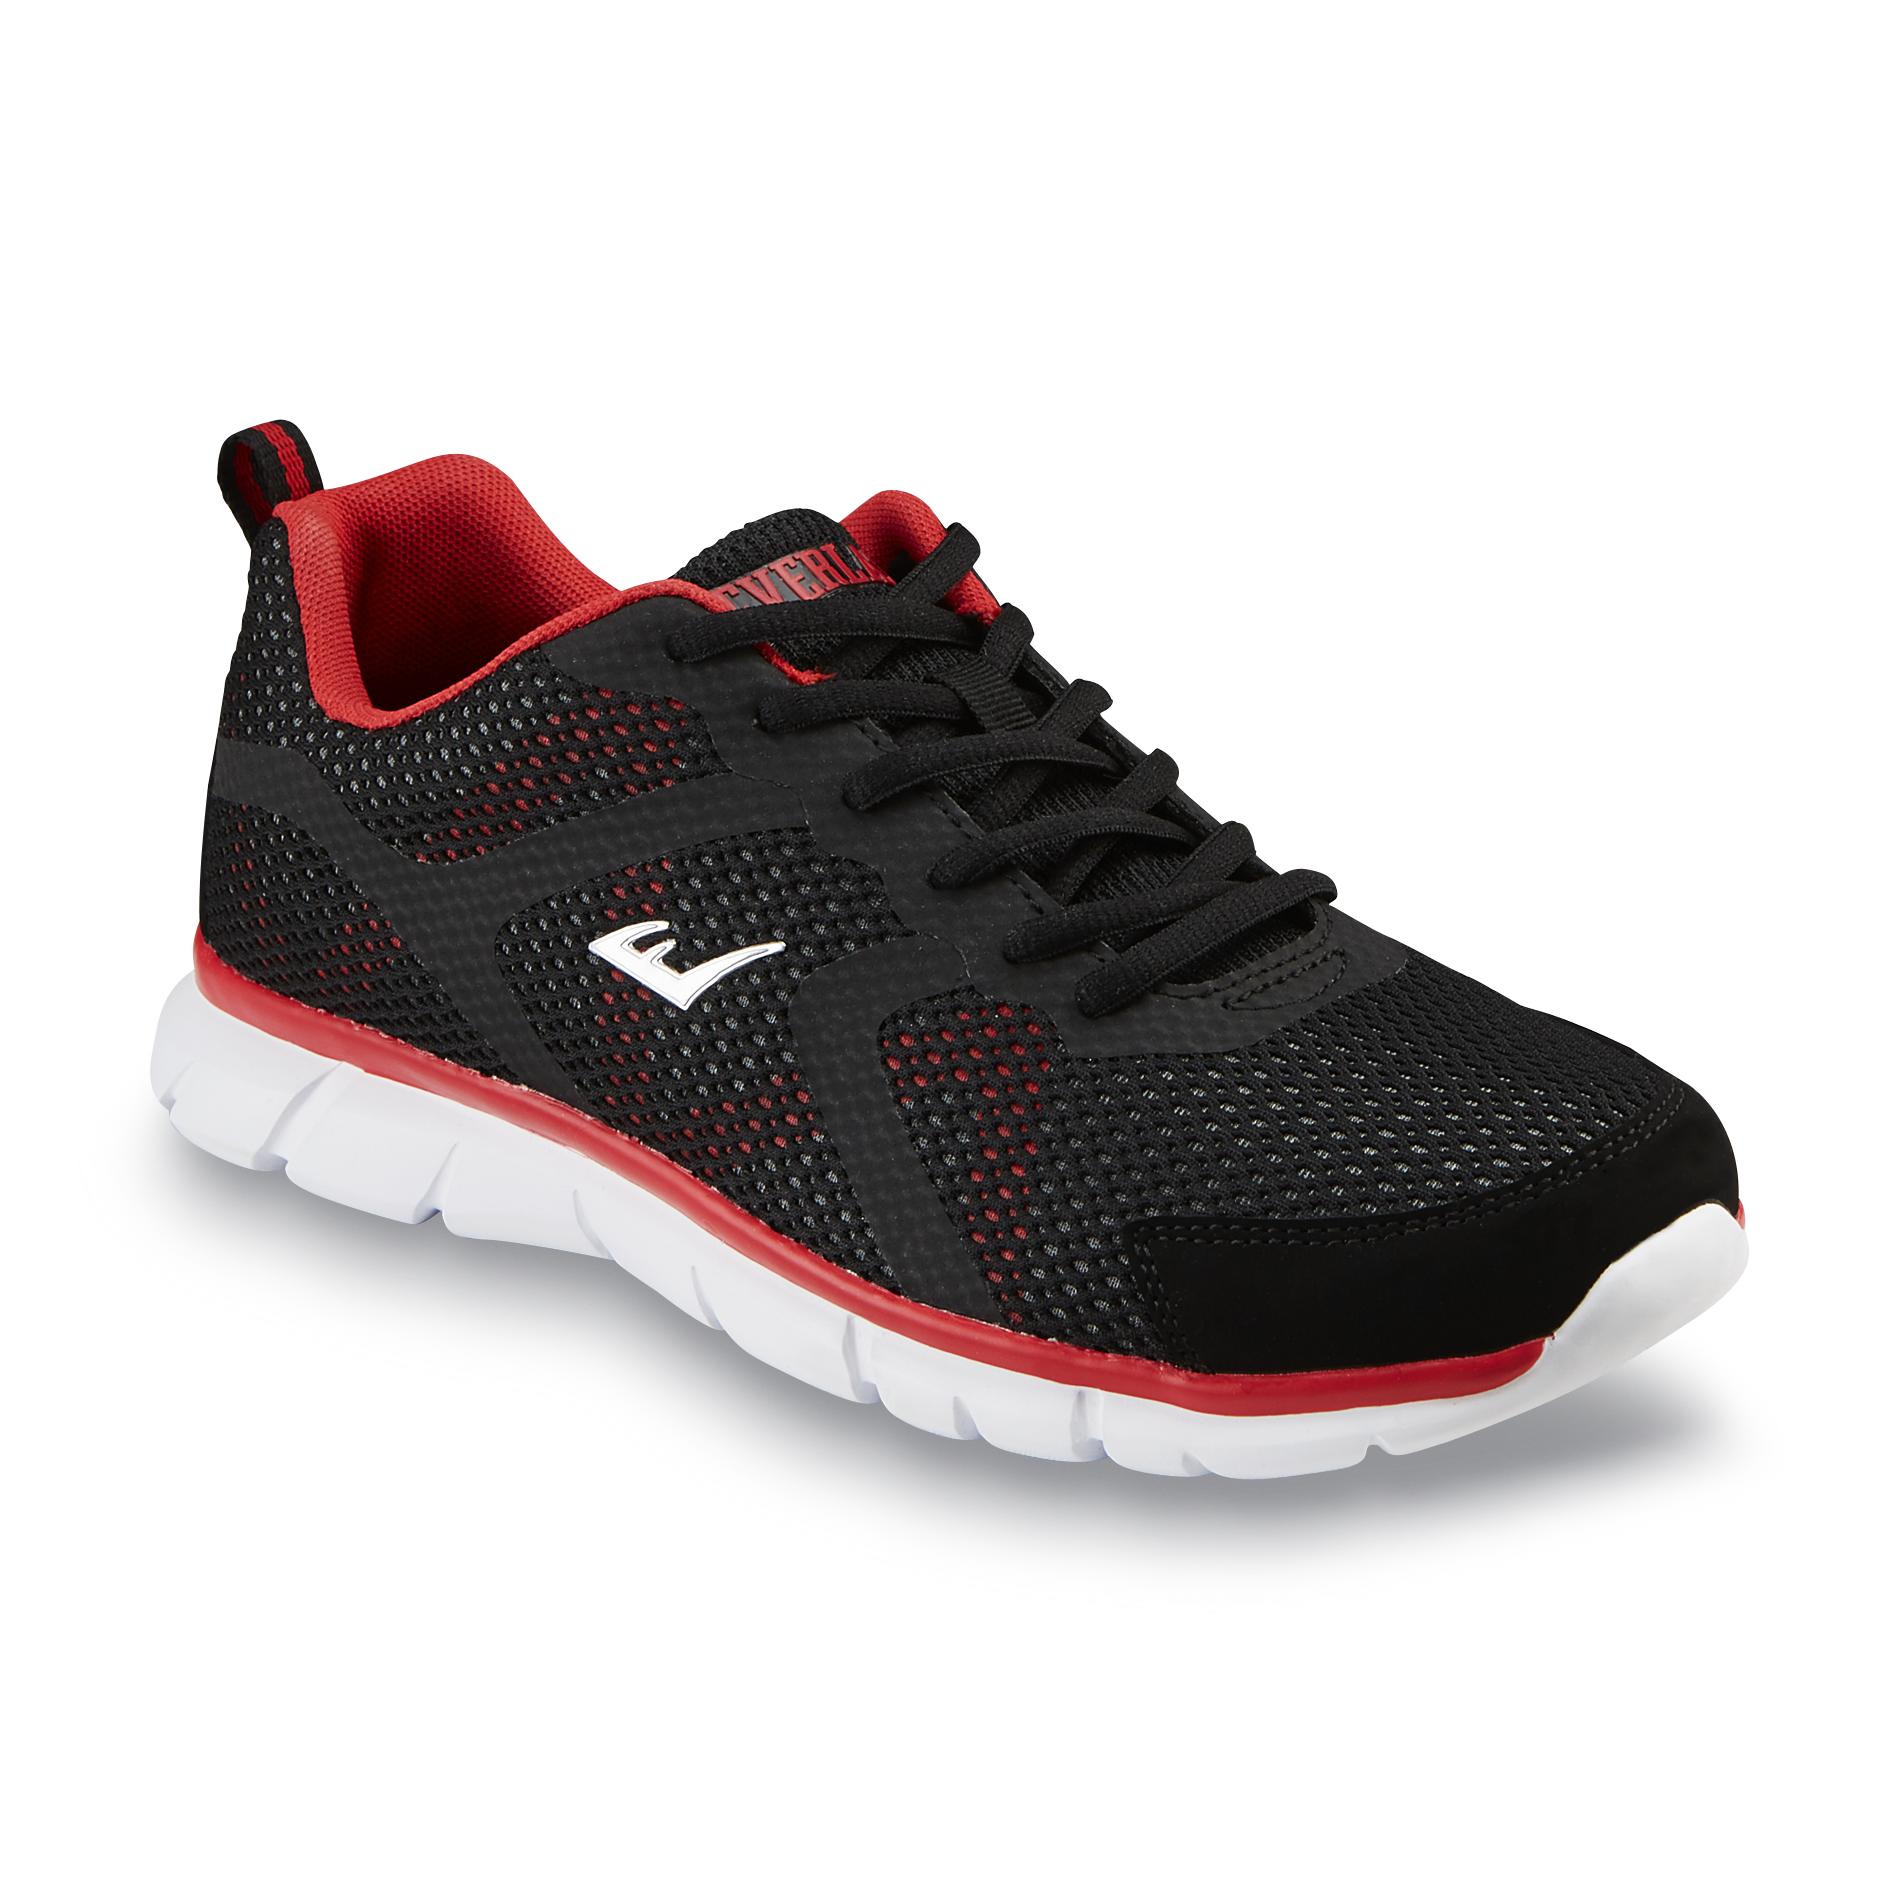 Everlast® Men's Advantage Red/Black Running Shoe - Shoes - Men's Shoes ...